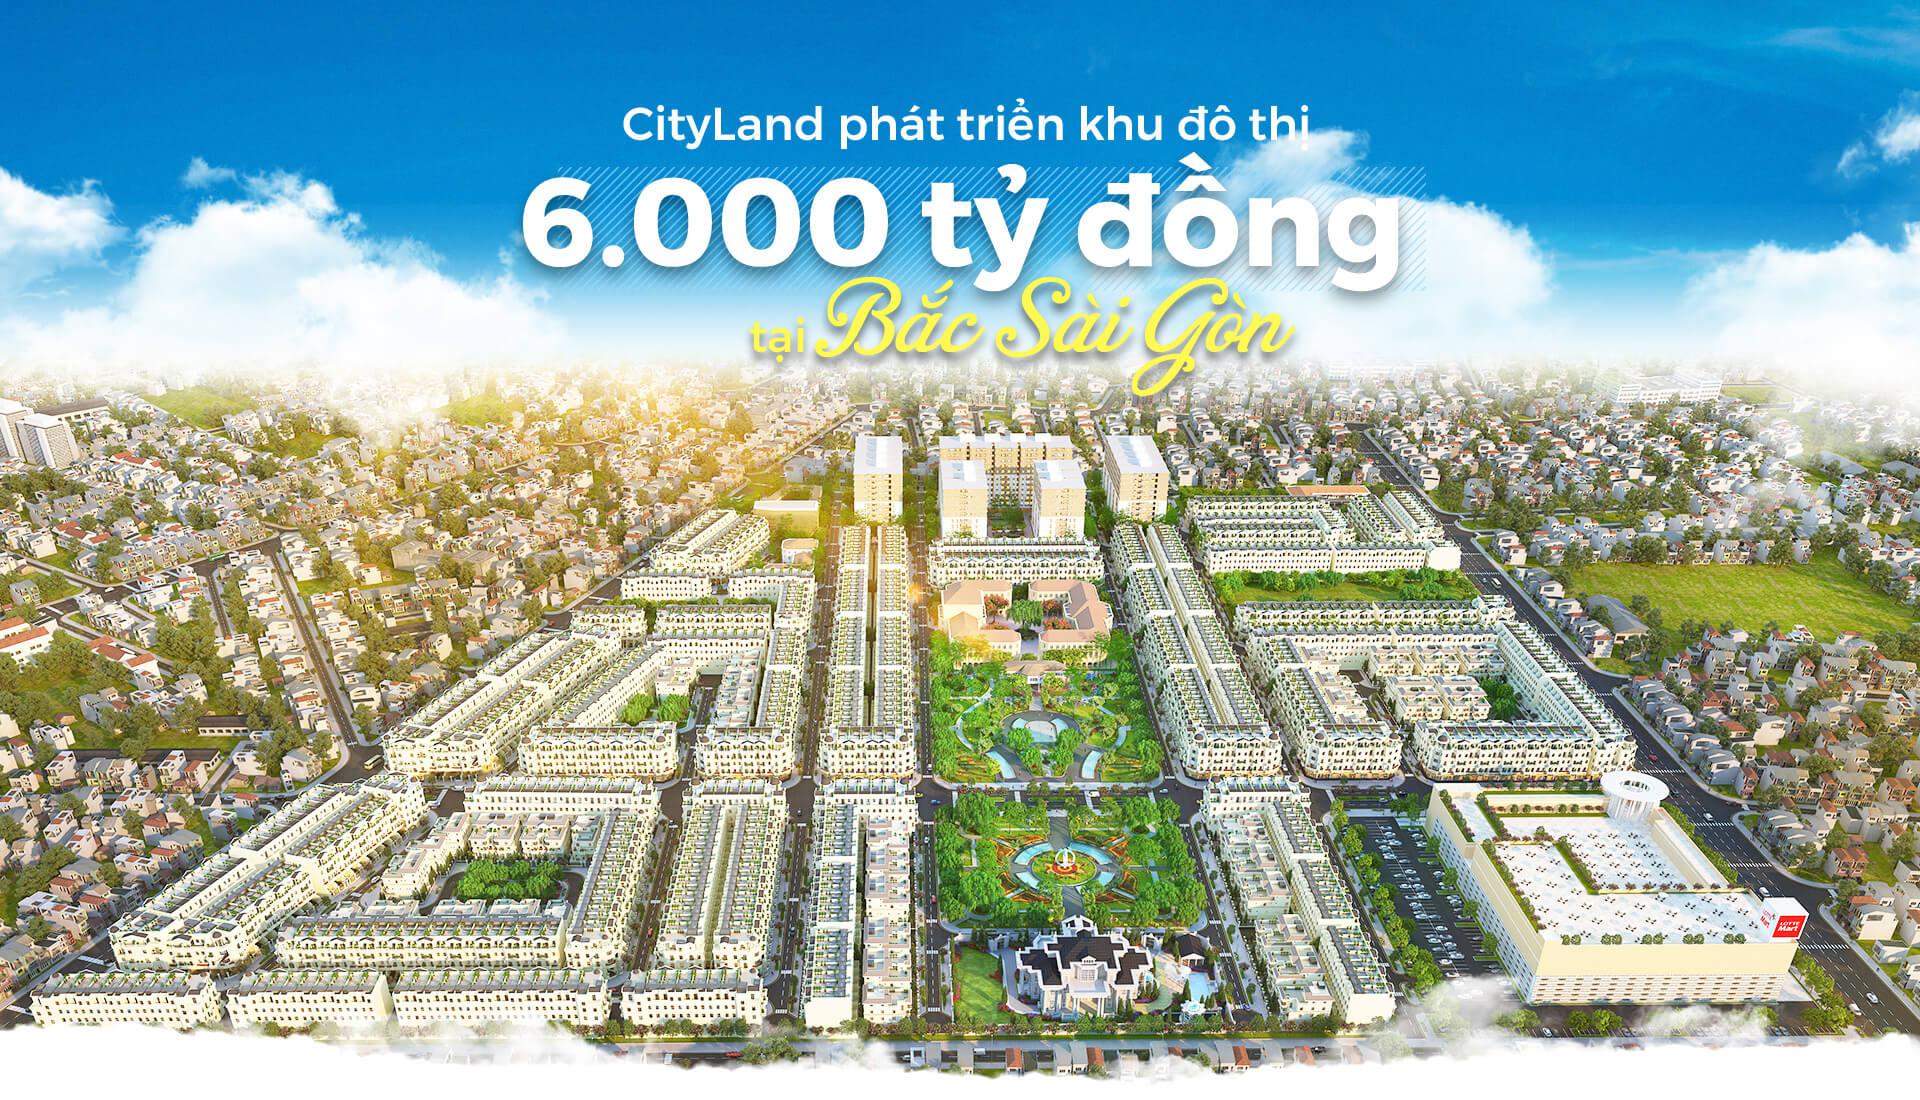 Cityland phát triển khu đô thị 6.000 tỷ đồng tại Bắc Sài Gòn